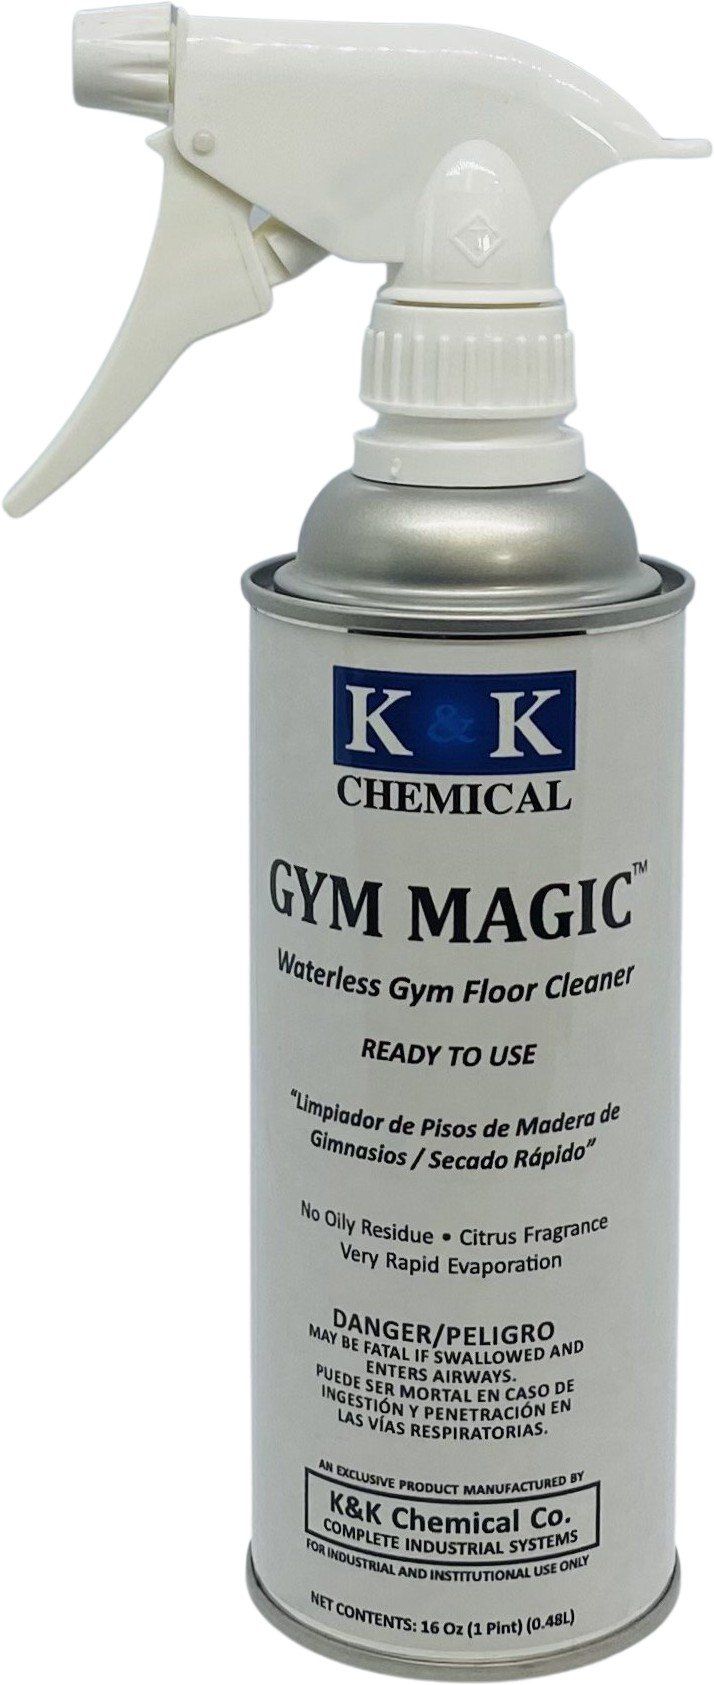 GYM MAGIC | RTU - Waterless Gym and Wood Floor Cleaner